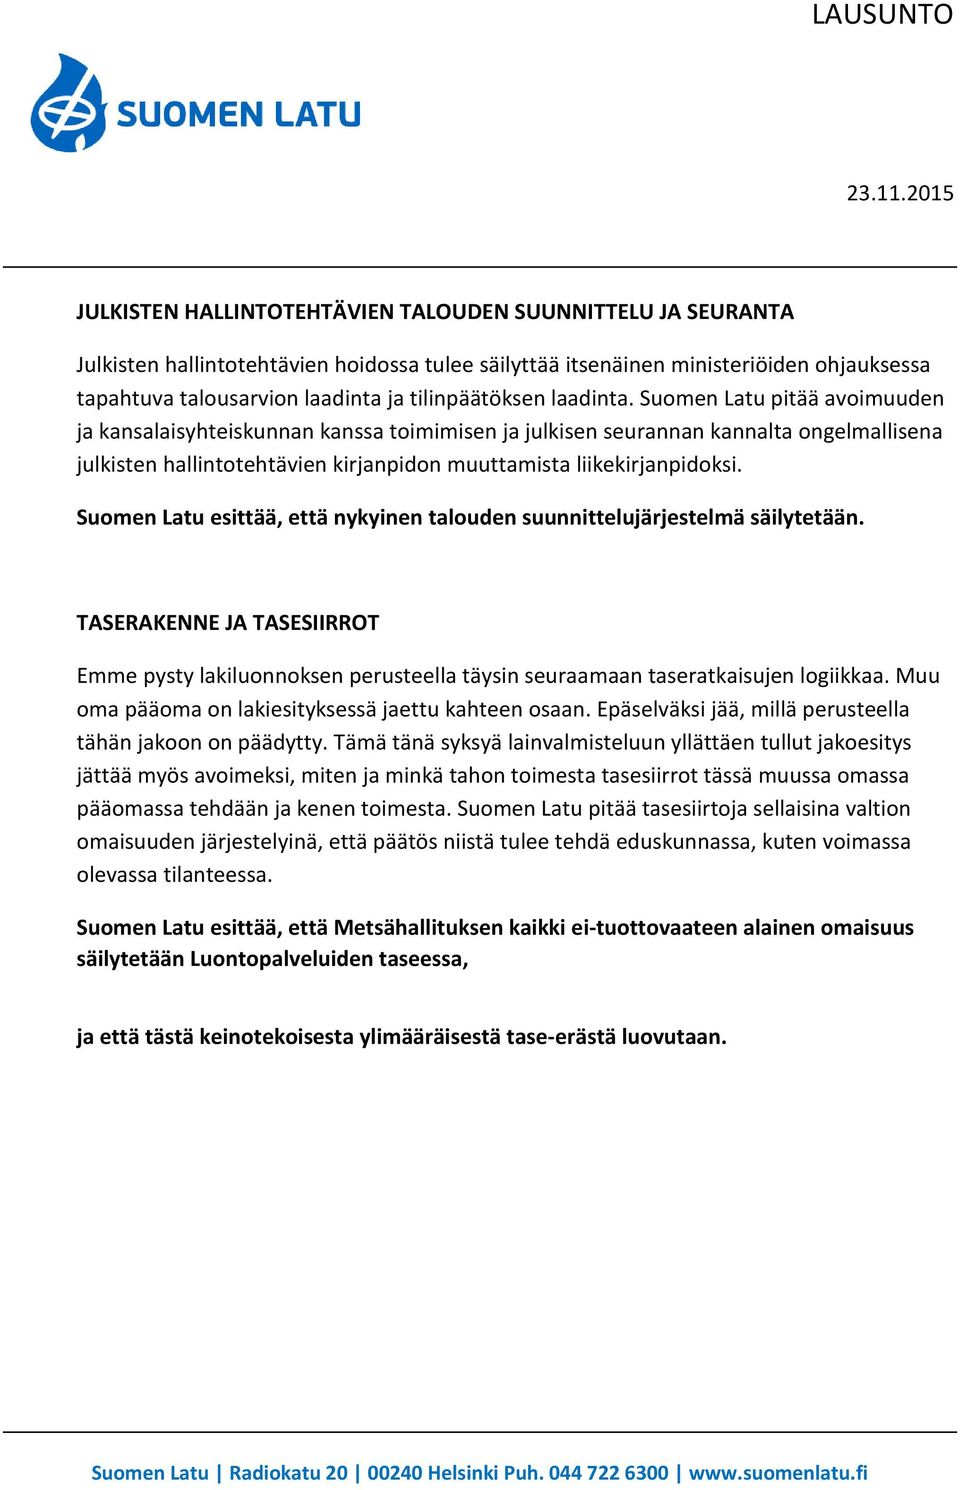 Suomen Latu pitää avoimuuden ja kansalaisyhteiskunnan kanssa toimimisen ja julkisen seurannan kannalta ongelmallisena julkisten hallintotehtävien kirjanpidon muuttamista liikekirjanpidoksi.